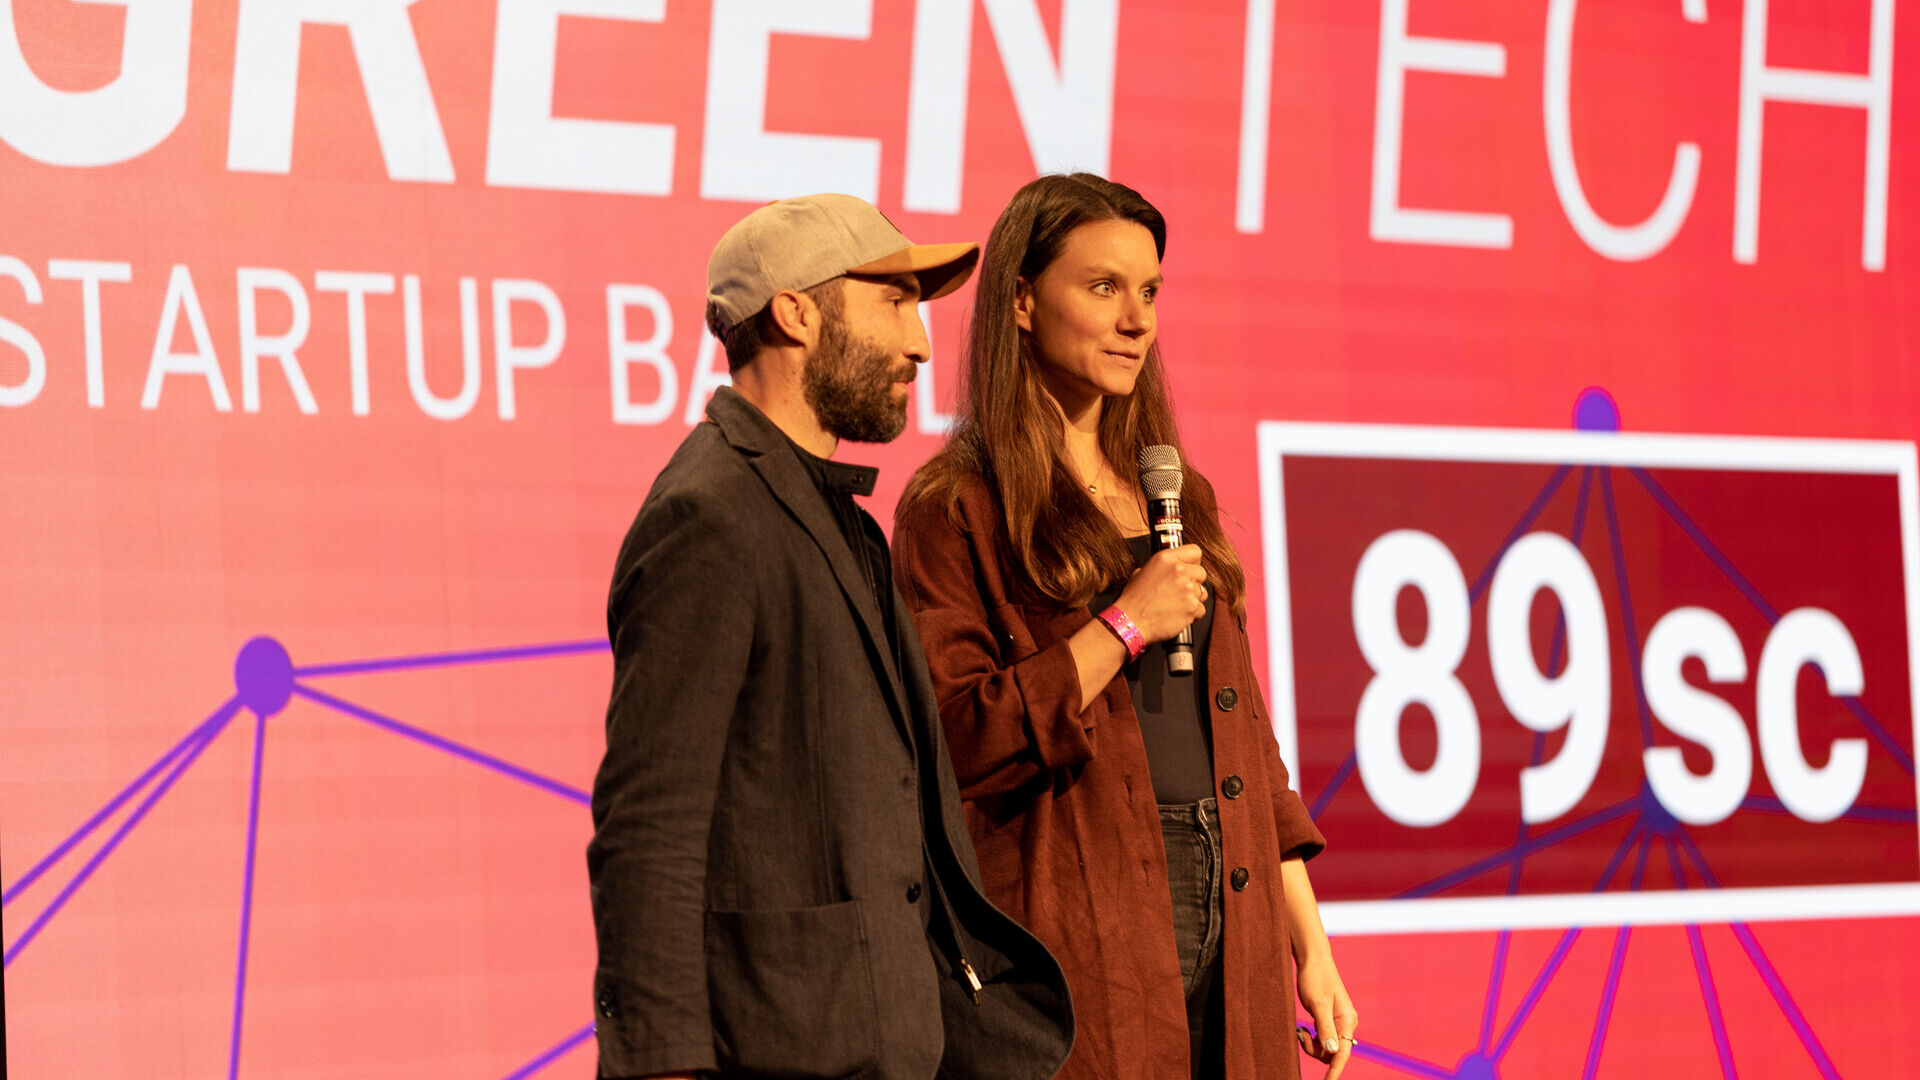 Giornate Digitali Svizzere: l’evento conclusivo delle “Giornate Digitali Svizzere” 2022 alla Freiruum di Zugo (Zugo) il 27 ottobre: la premiazione dell’iniziativa “Greentech Startup Battle” con la vittoria di viboo